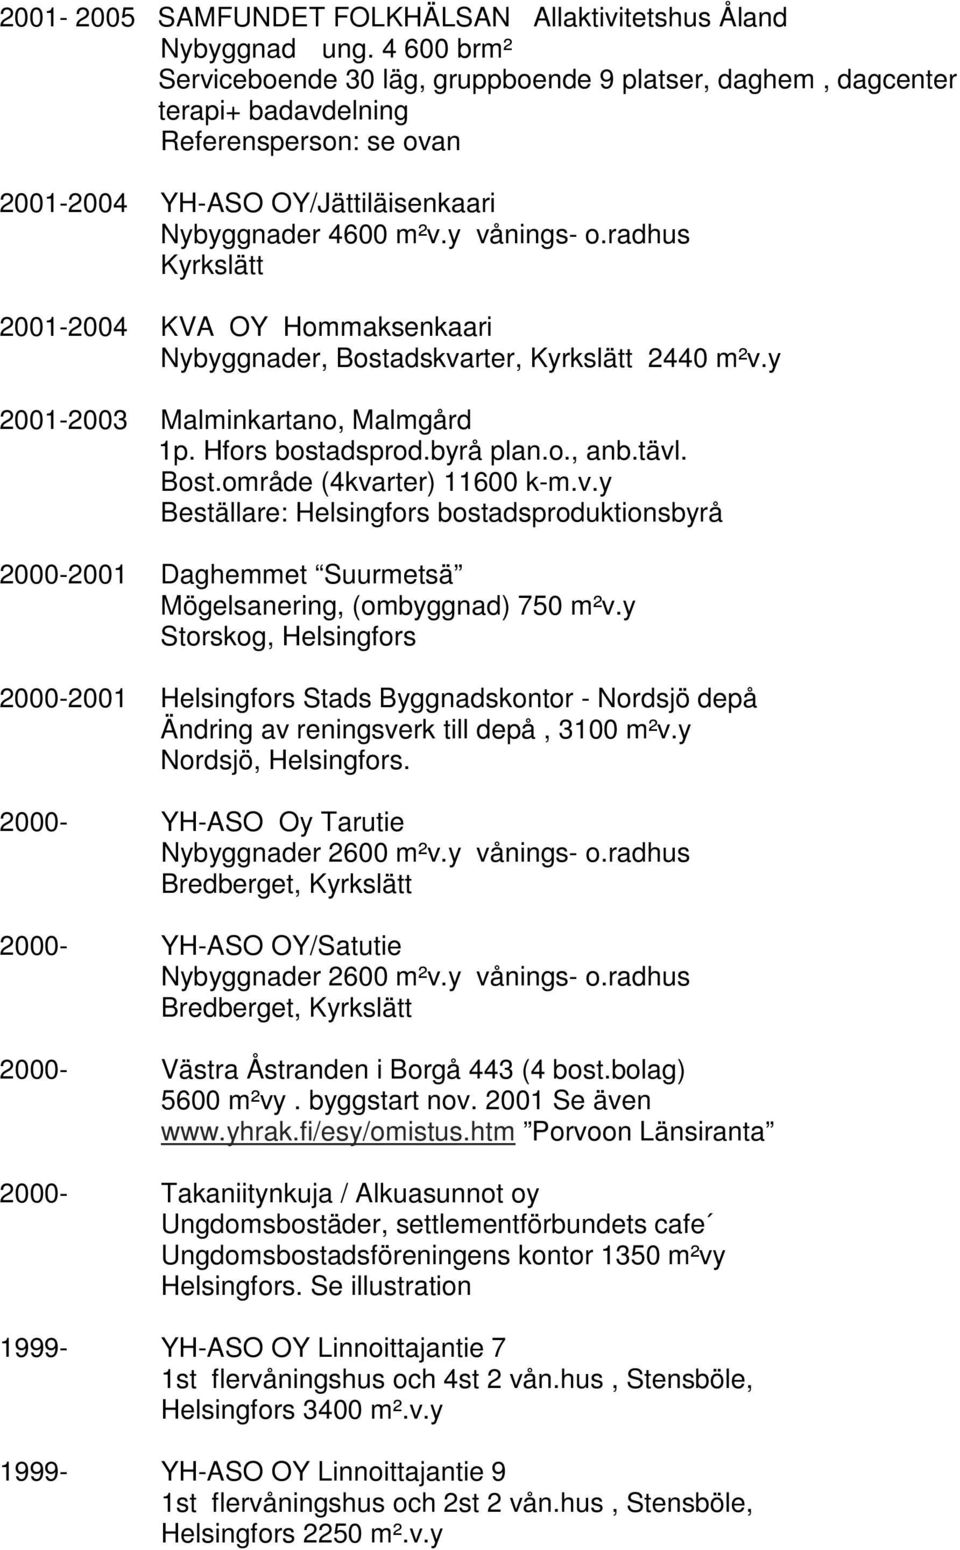 radhus Kyrkslätt 2001-2004 KVA OY Hommaksenkaari Nybyggnader, Bostadskvarter, Kyrkslätt 2440 m²v.y 2001-2003 Malminkartano, Malmgård 1p. Hfors bostadsprod.byrå plan.o., anb.tävl. Bost.område (4kvarter) 11600 k-m.